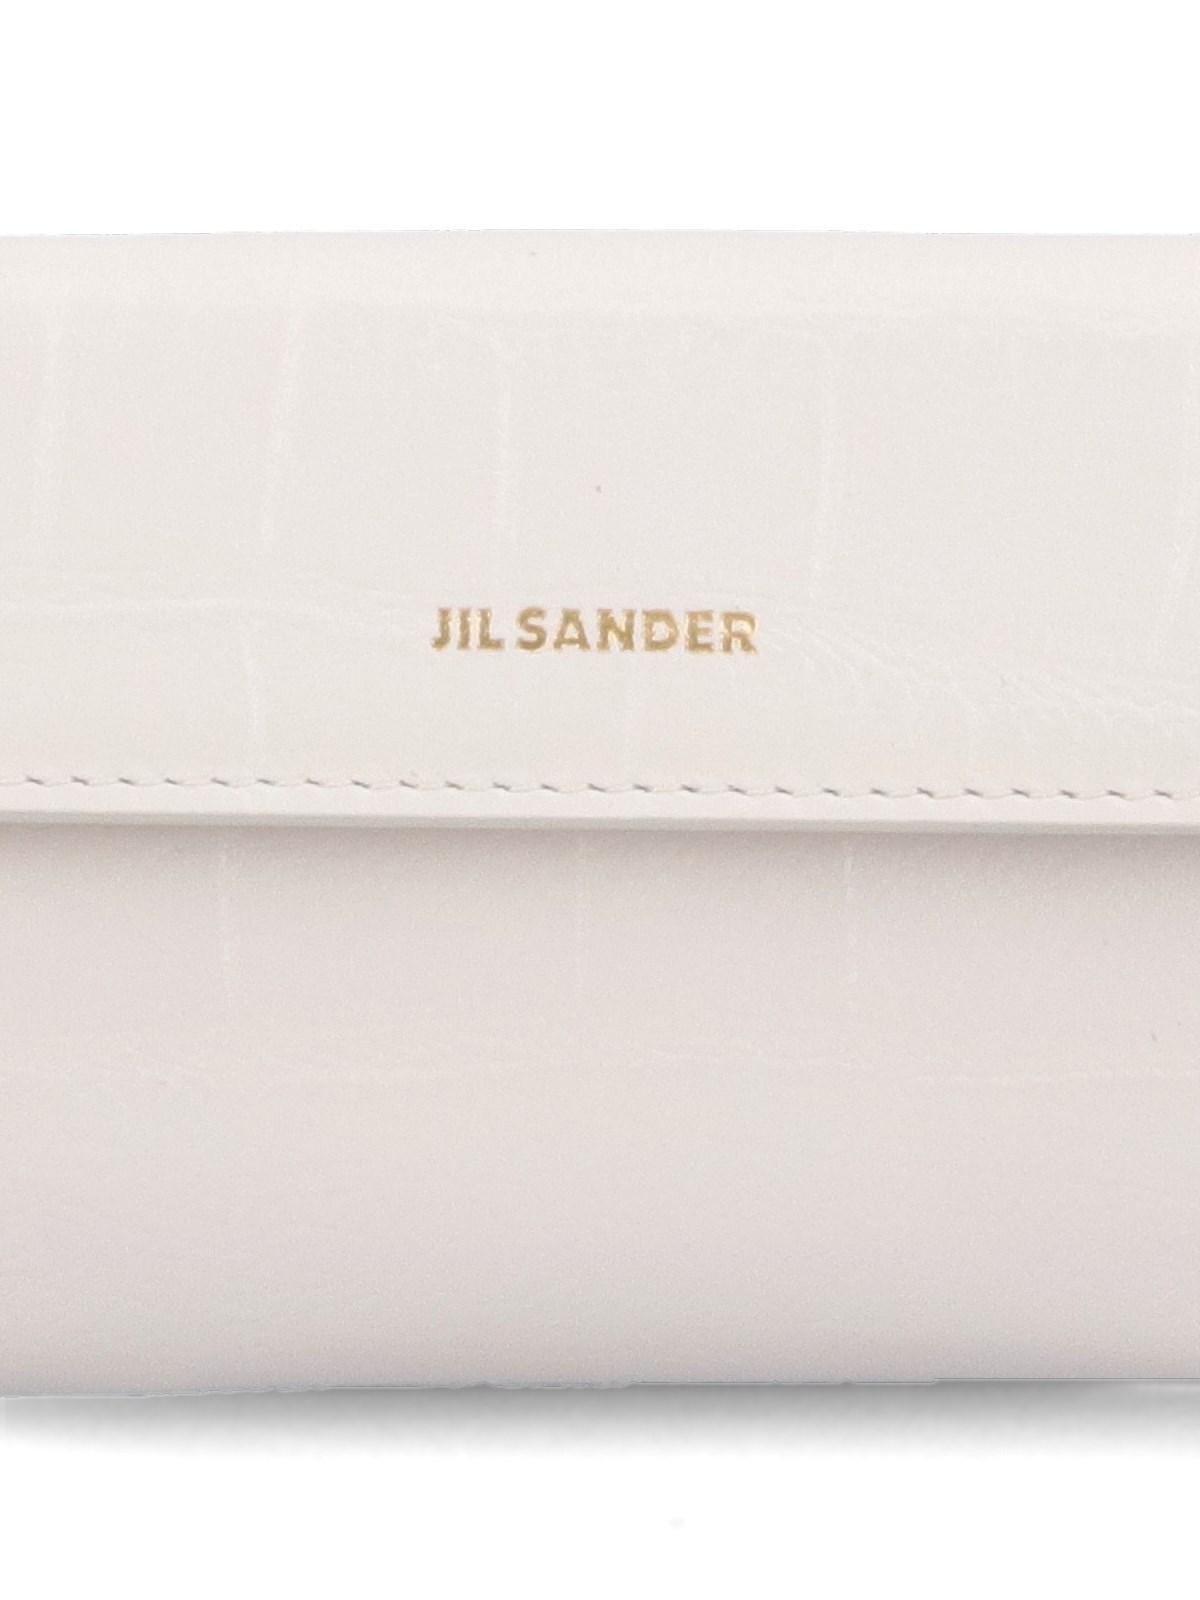 Jil Sander Mini Logo Wallet in White | Lyst